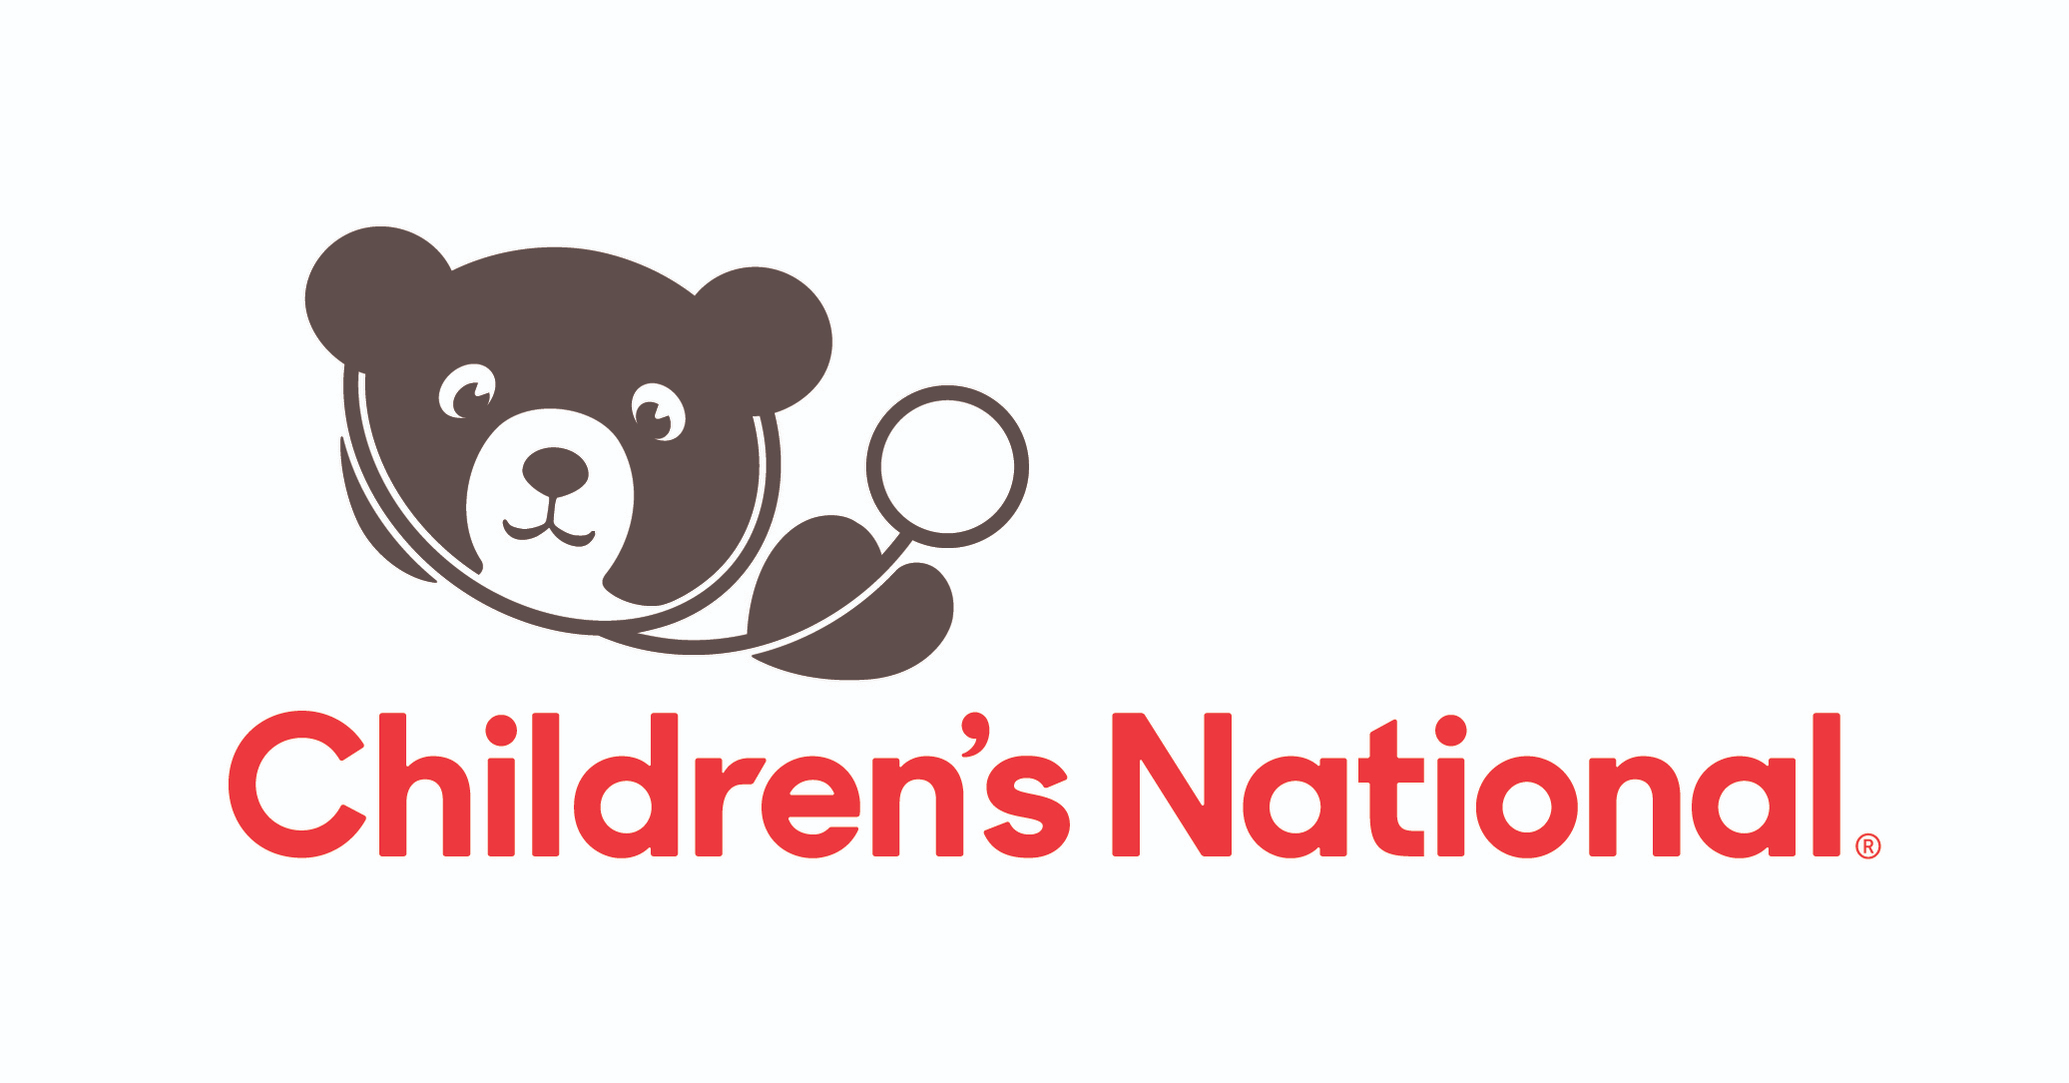 The Children's National Hospital logo.